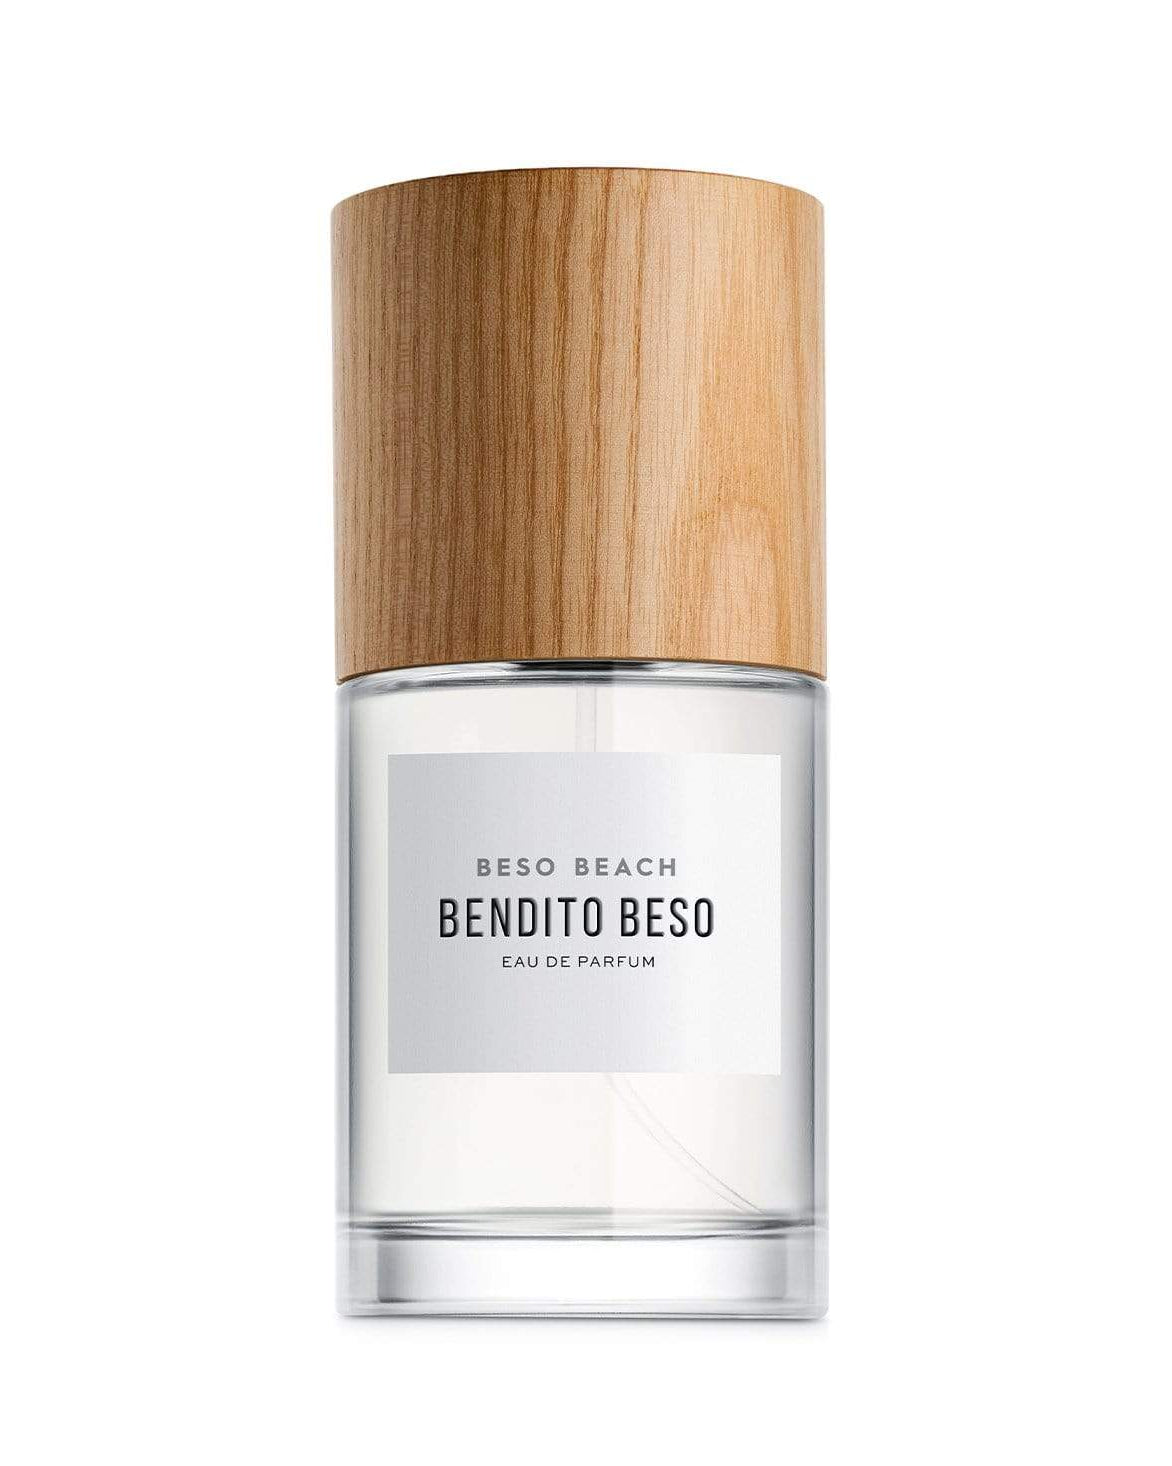 Bendito Beso Eau de Parfum - Men's Fragrance at Menzclub